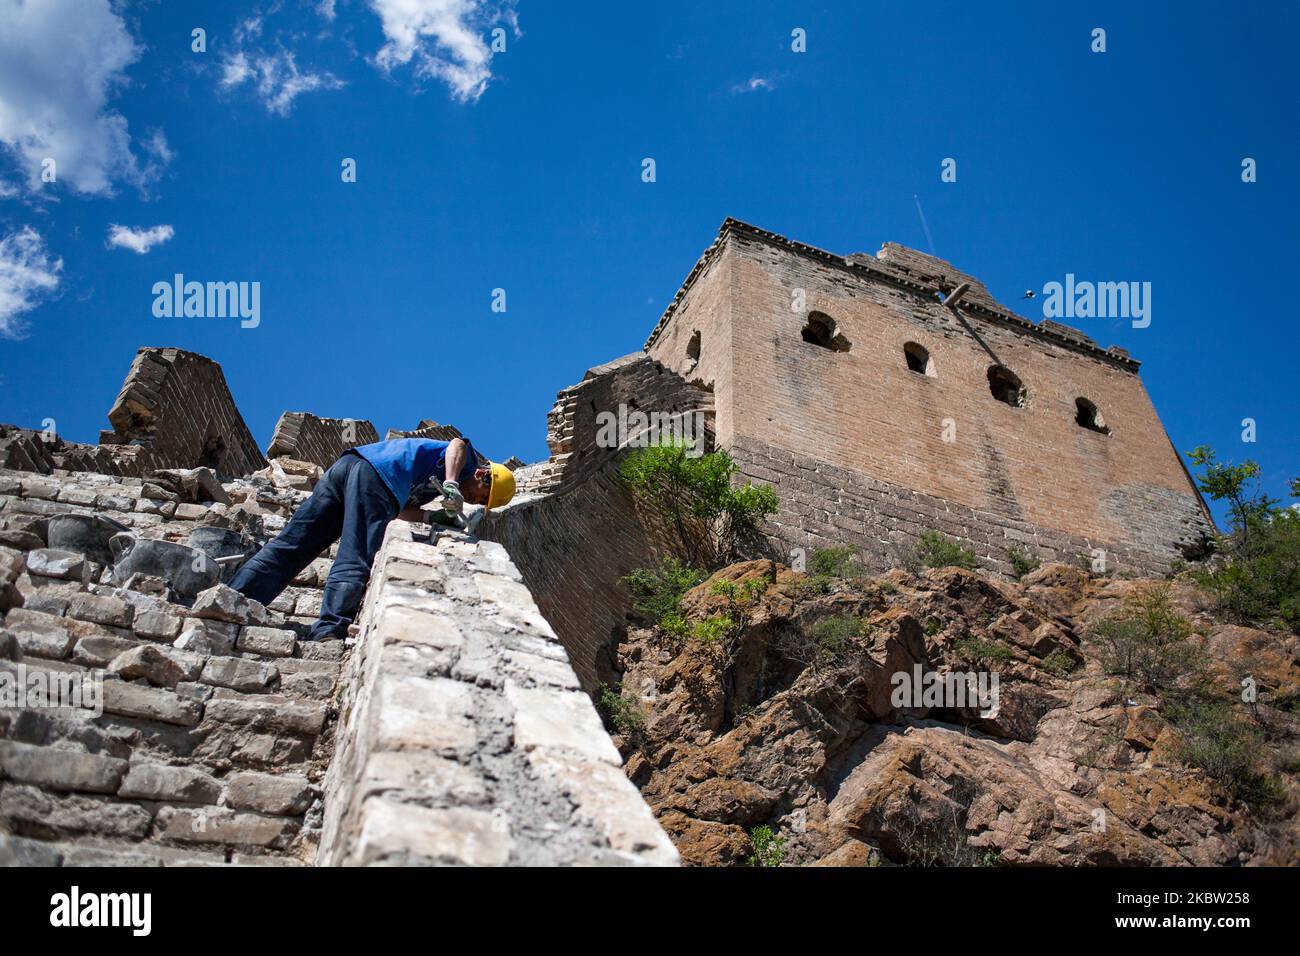 Jinshanling, Chine, le 4 juin 2011. Un ouvrier rénove le grand mur de Chine situé dans la région montagneuse du comté de Luanping, province de Hebei, à 125 km au nord-est de Beijing. Cette section du mur est reliée à la section de Simatai à l'est. Une certaine distance à l'ouest se trouve la section de Mutianyu. La section de Jinshanling du mur a été construite à partir de 1570 ce pendant la dynastie Ming. (Photo par Emeric Fohlen/NurPhoto) Banque D'Images